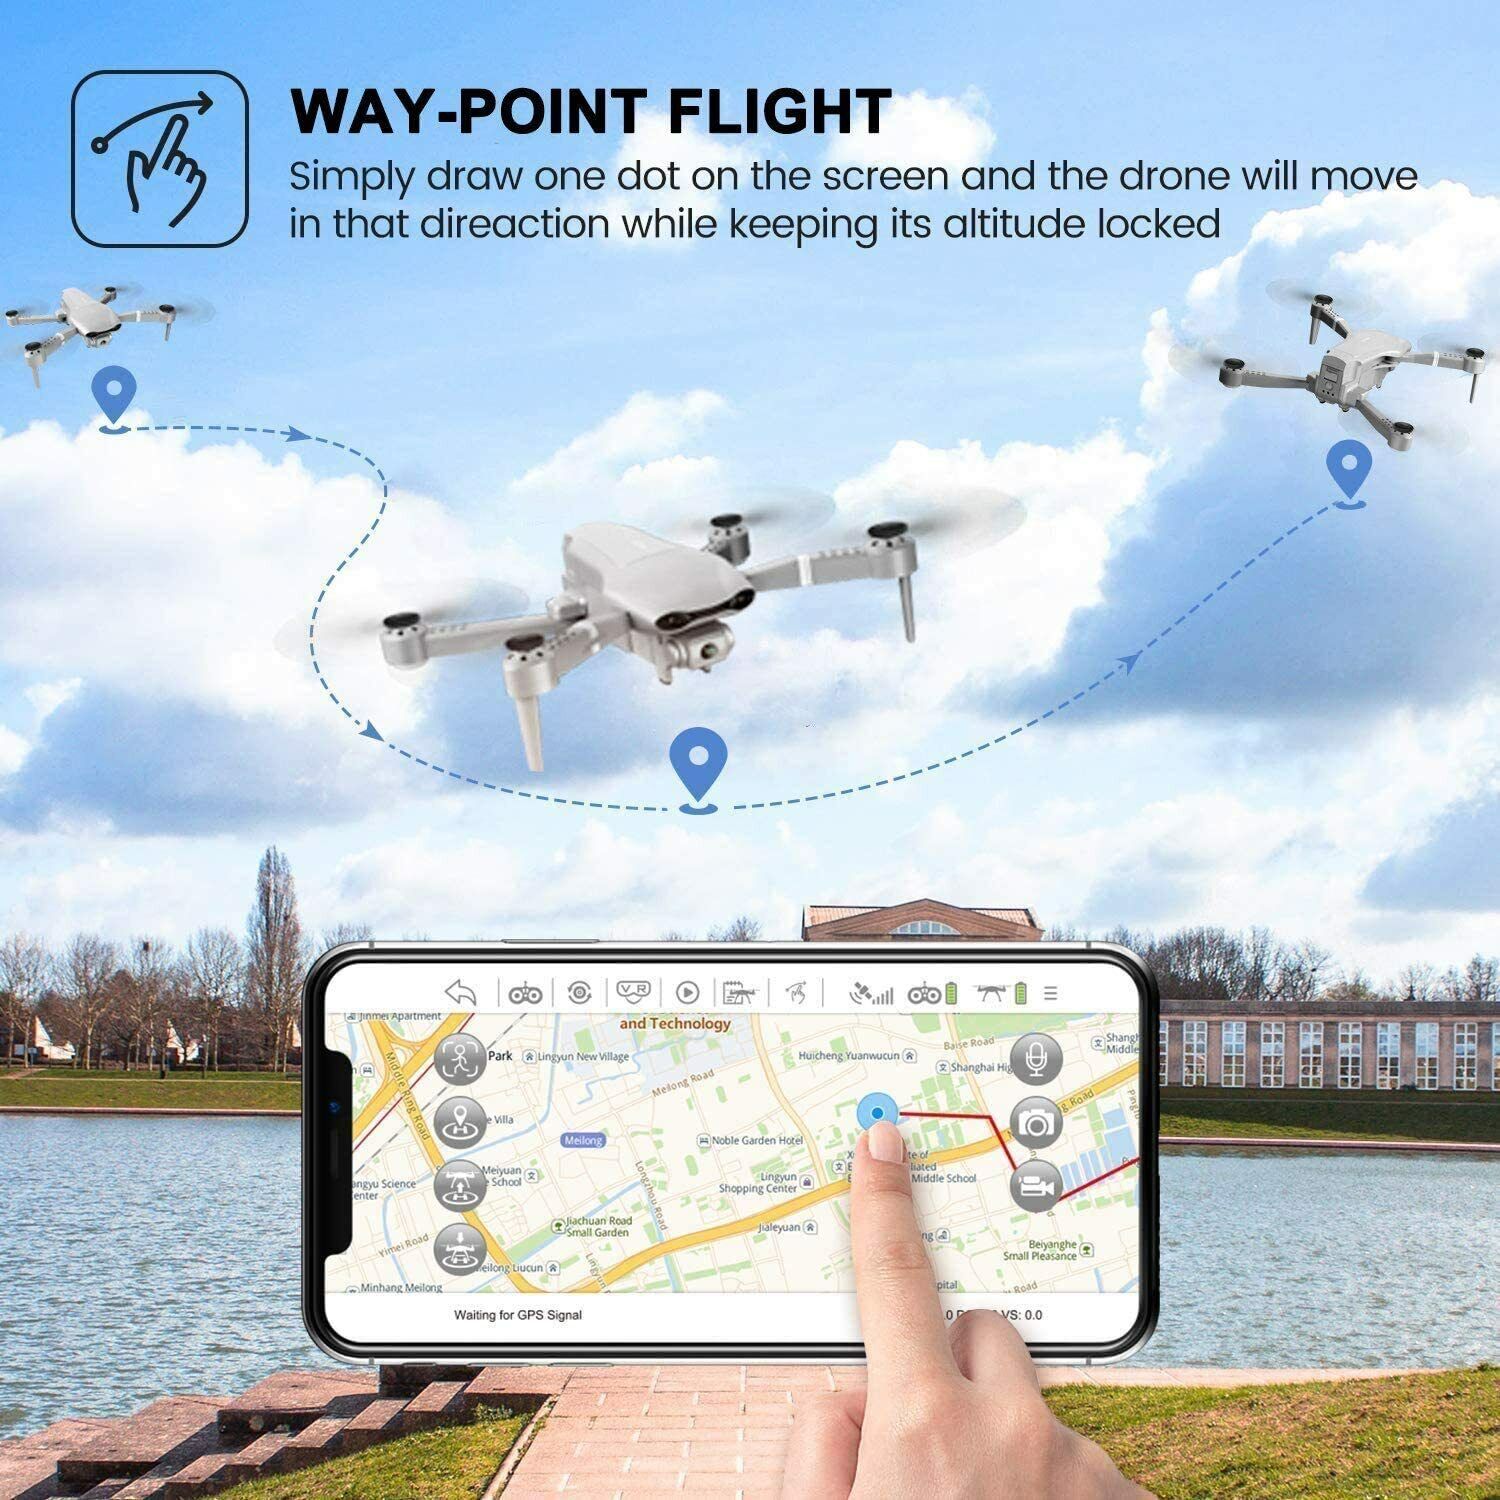 F3 Pro GPS 5G WiFi FPV Drone